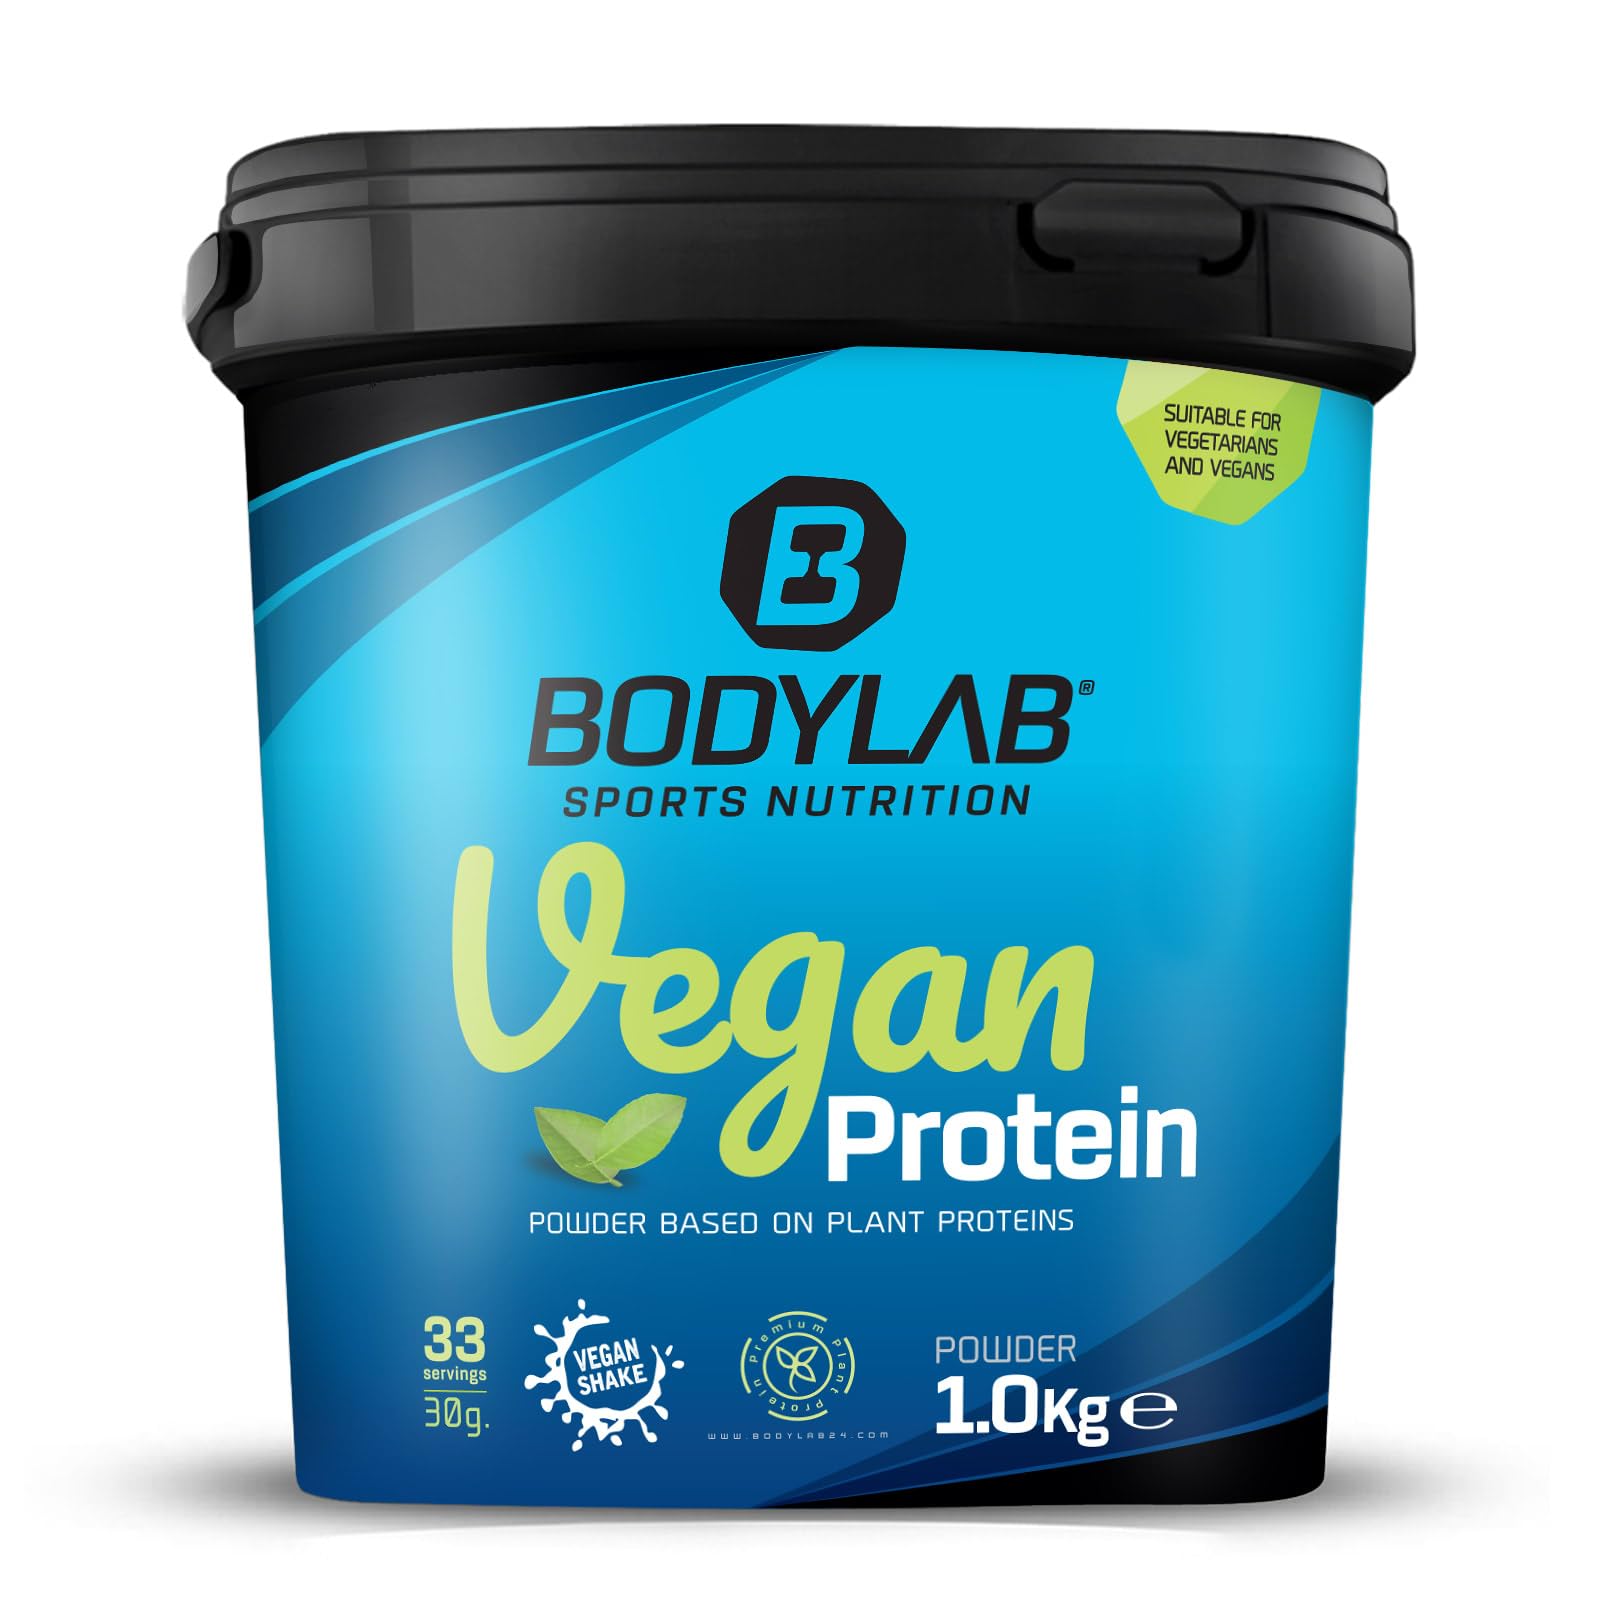 Bodylab24 Vegan Protein Haselnuss 1000g, 100% veganes Proteinpulver aus Ackerbohnen, Erbsen- und Kürbiskernprotein, mit 80g Eiweiß je 100g Pulver, ideal für den Muskelaufbau und -erhalt